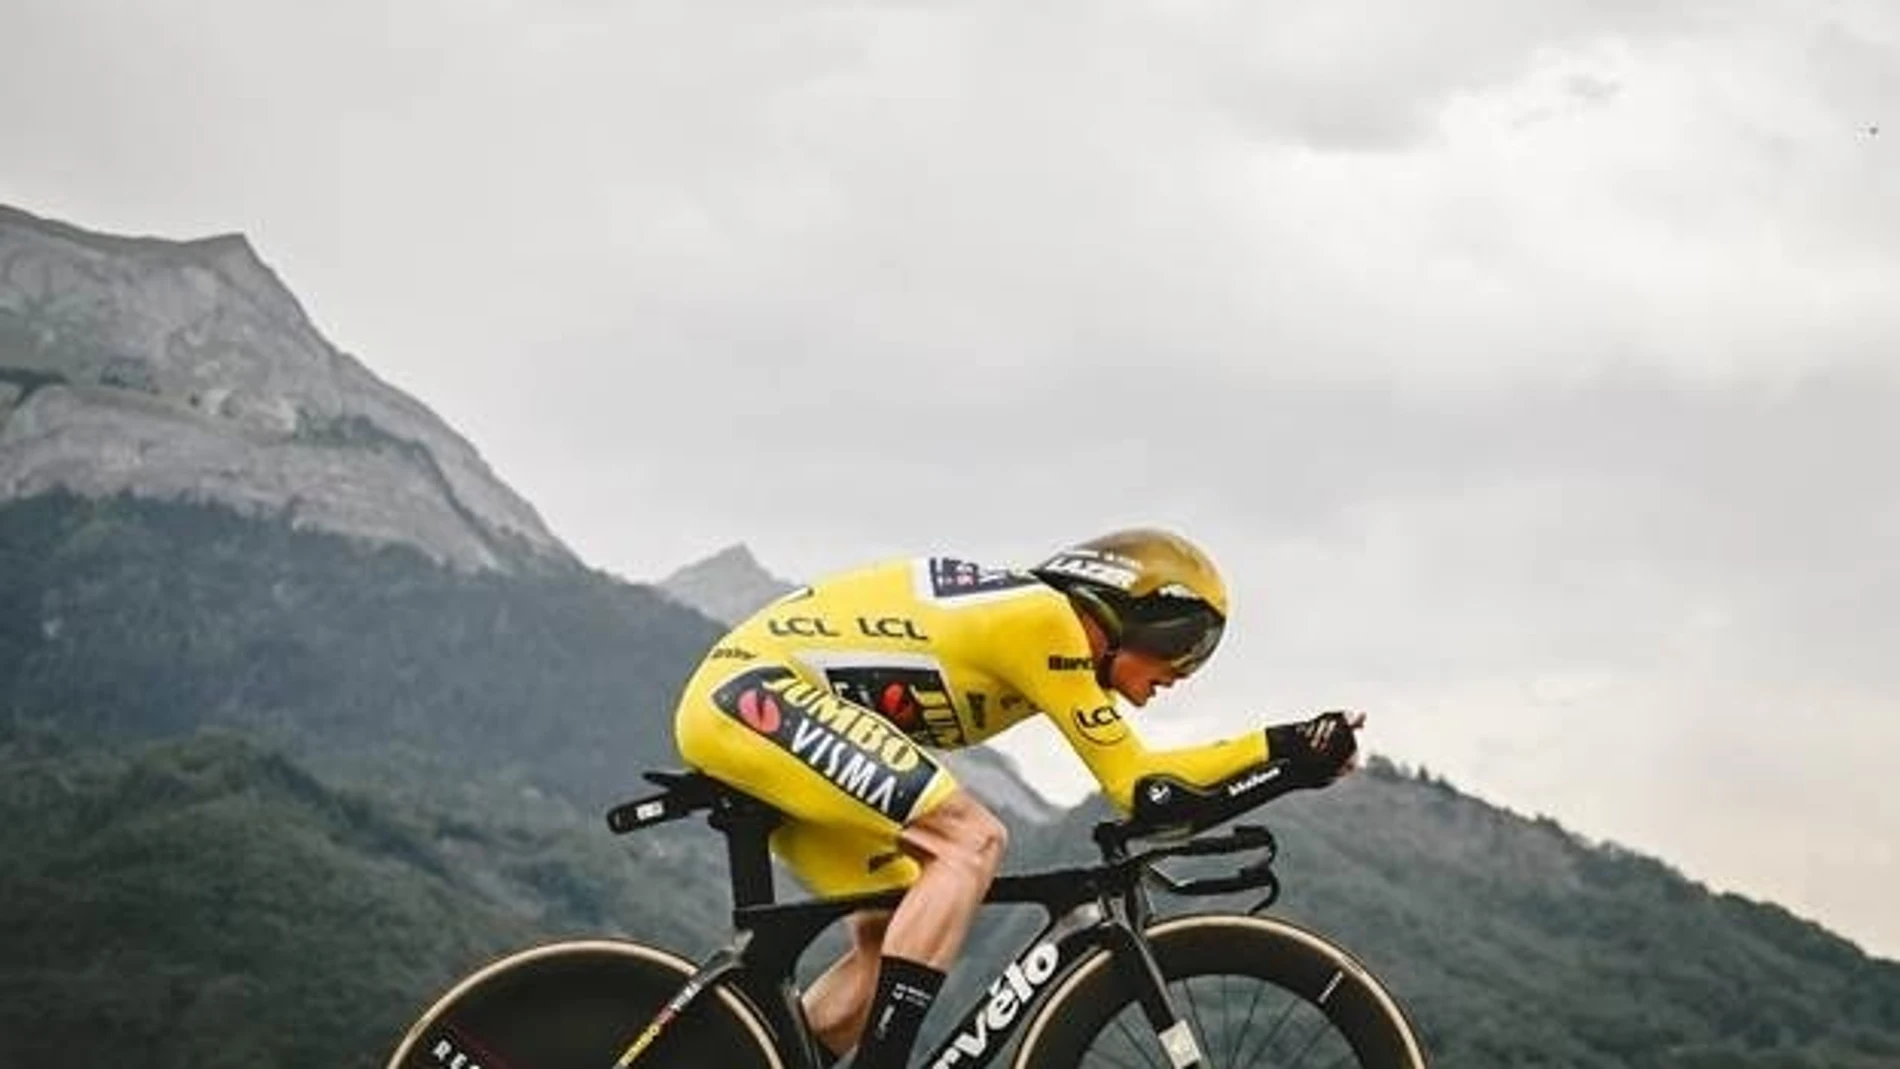 ¡Tour de Francia a prueba de tramposos! Las 997 pruebas de dopaje tecnológico arrojan resultados negativos